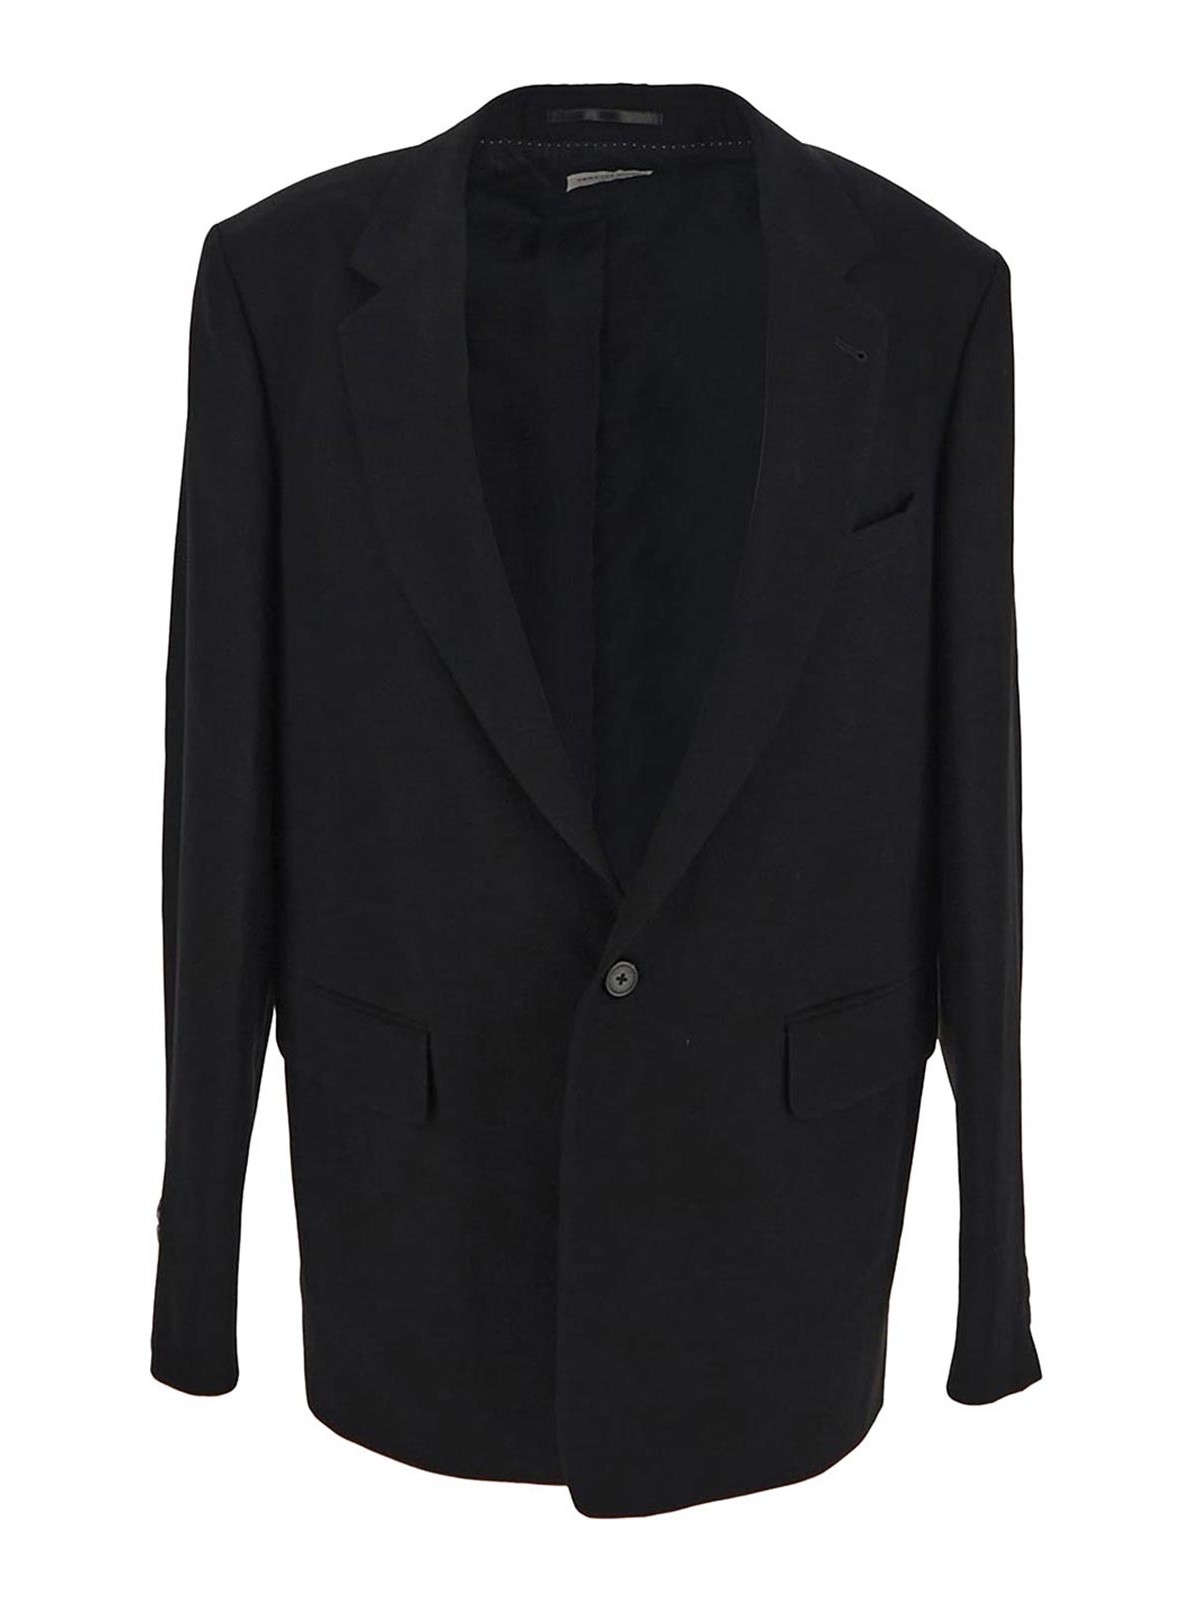 Dries Van Noten Black Jacket With Long Sleeves